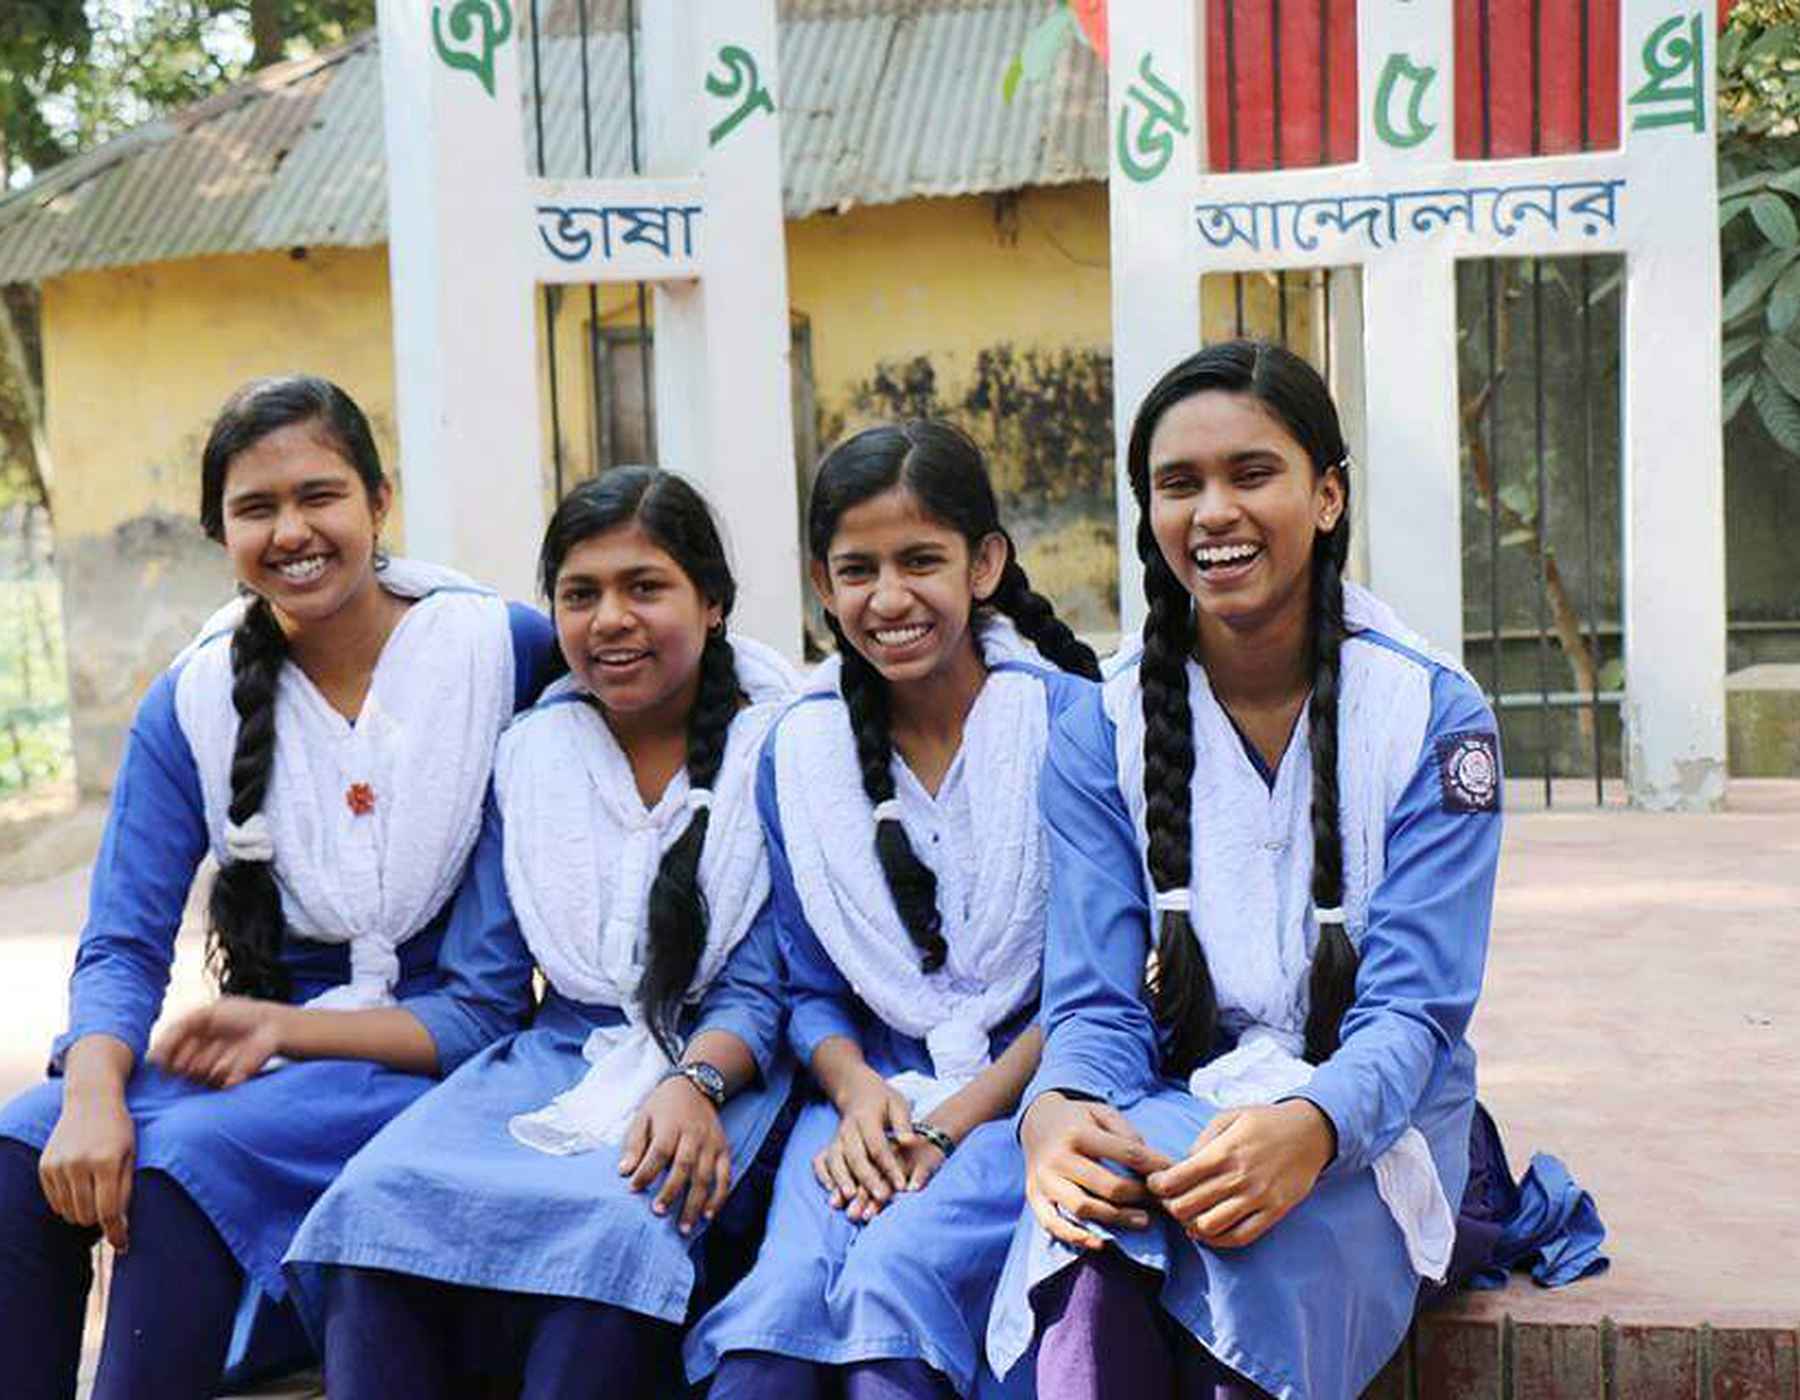 Cuatro mujeres jóvenes en Bangladesh se ríen mientras visten un uniforme azul y bufandas blancas.